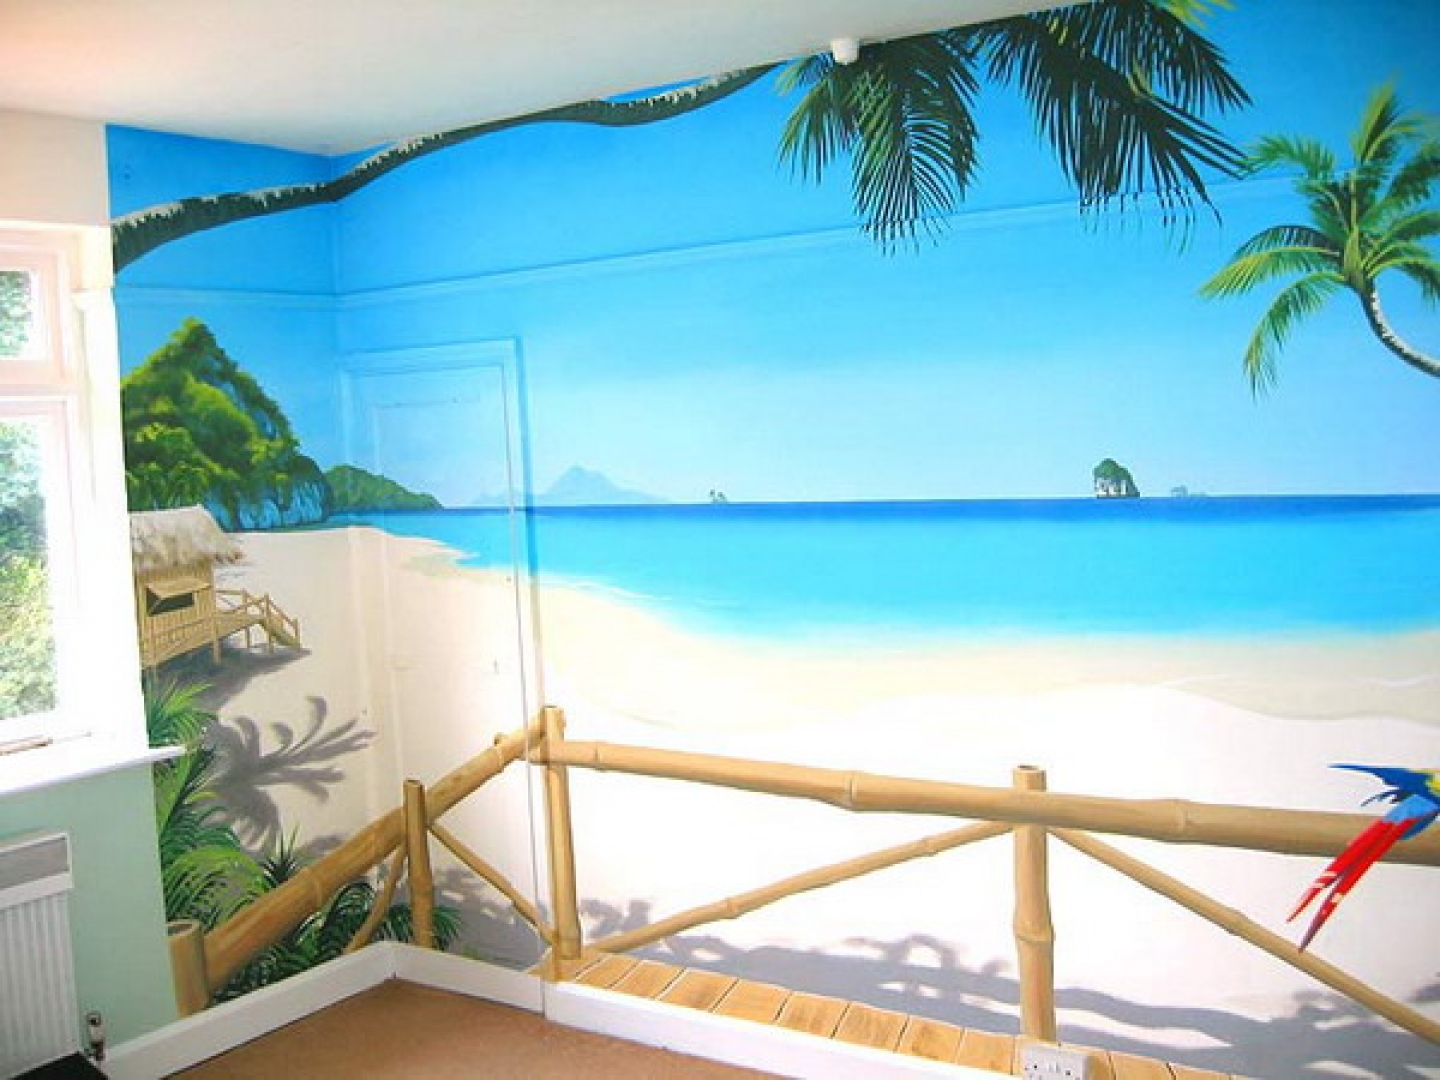 Tropical Beach Wall Murals Design Best Gallery